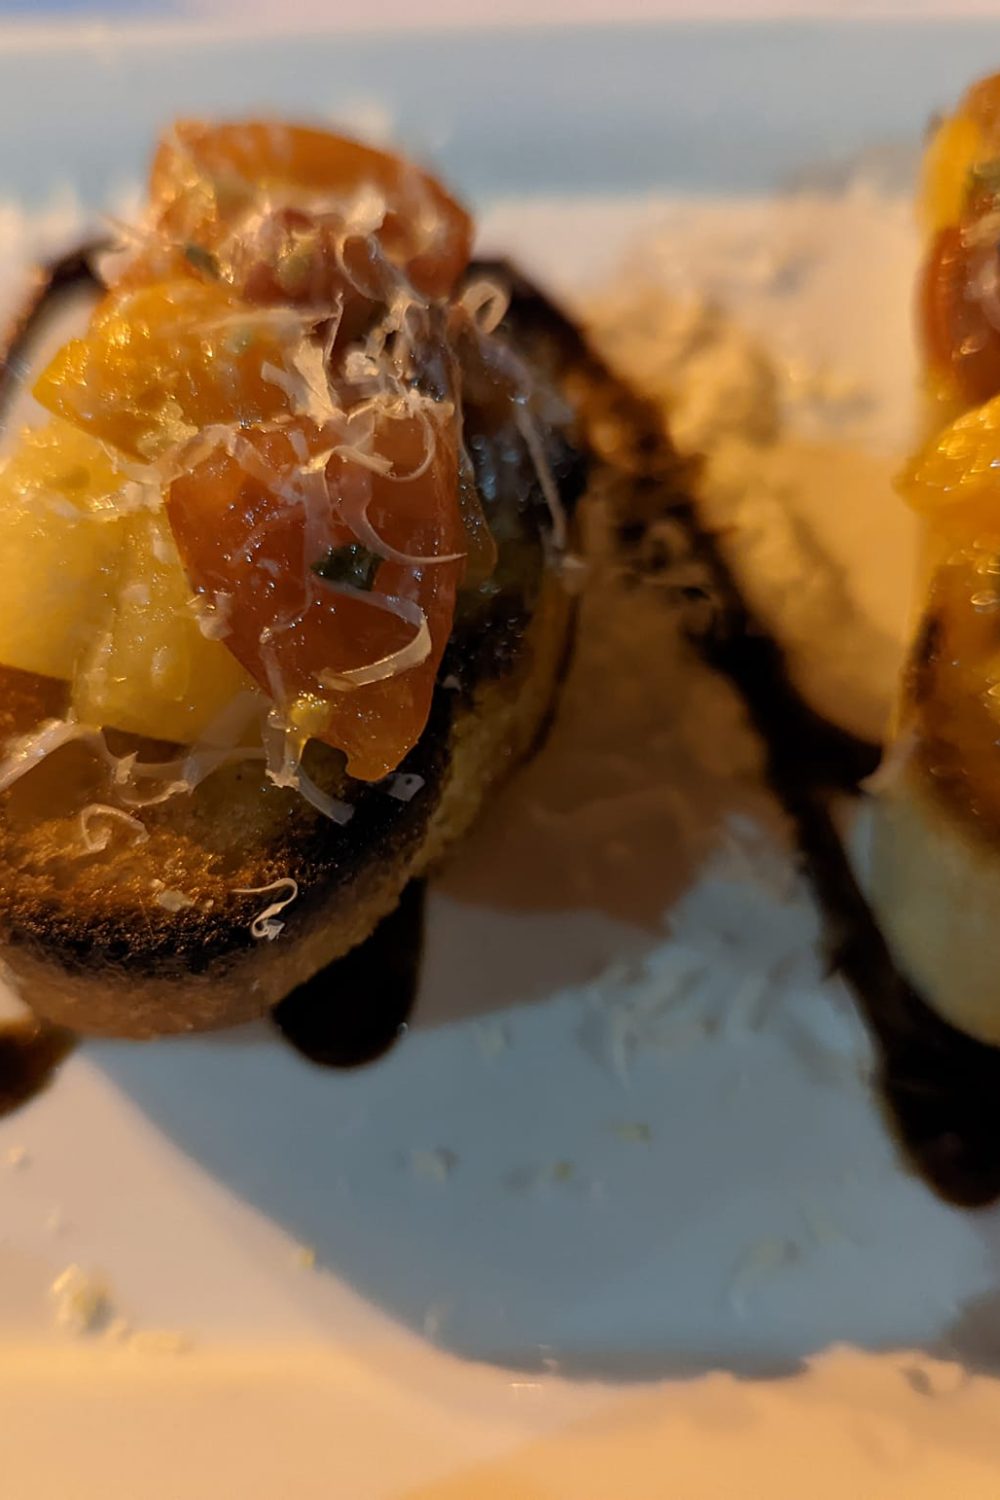 Heirloom tomato bruschetta from Trattoria del Porto at Portofino Bay hotel in Universal Orlando Resort